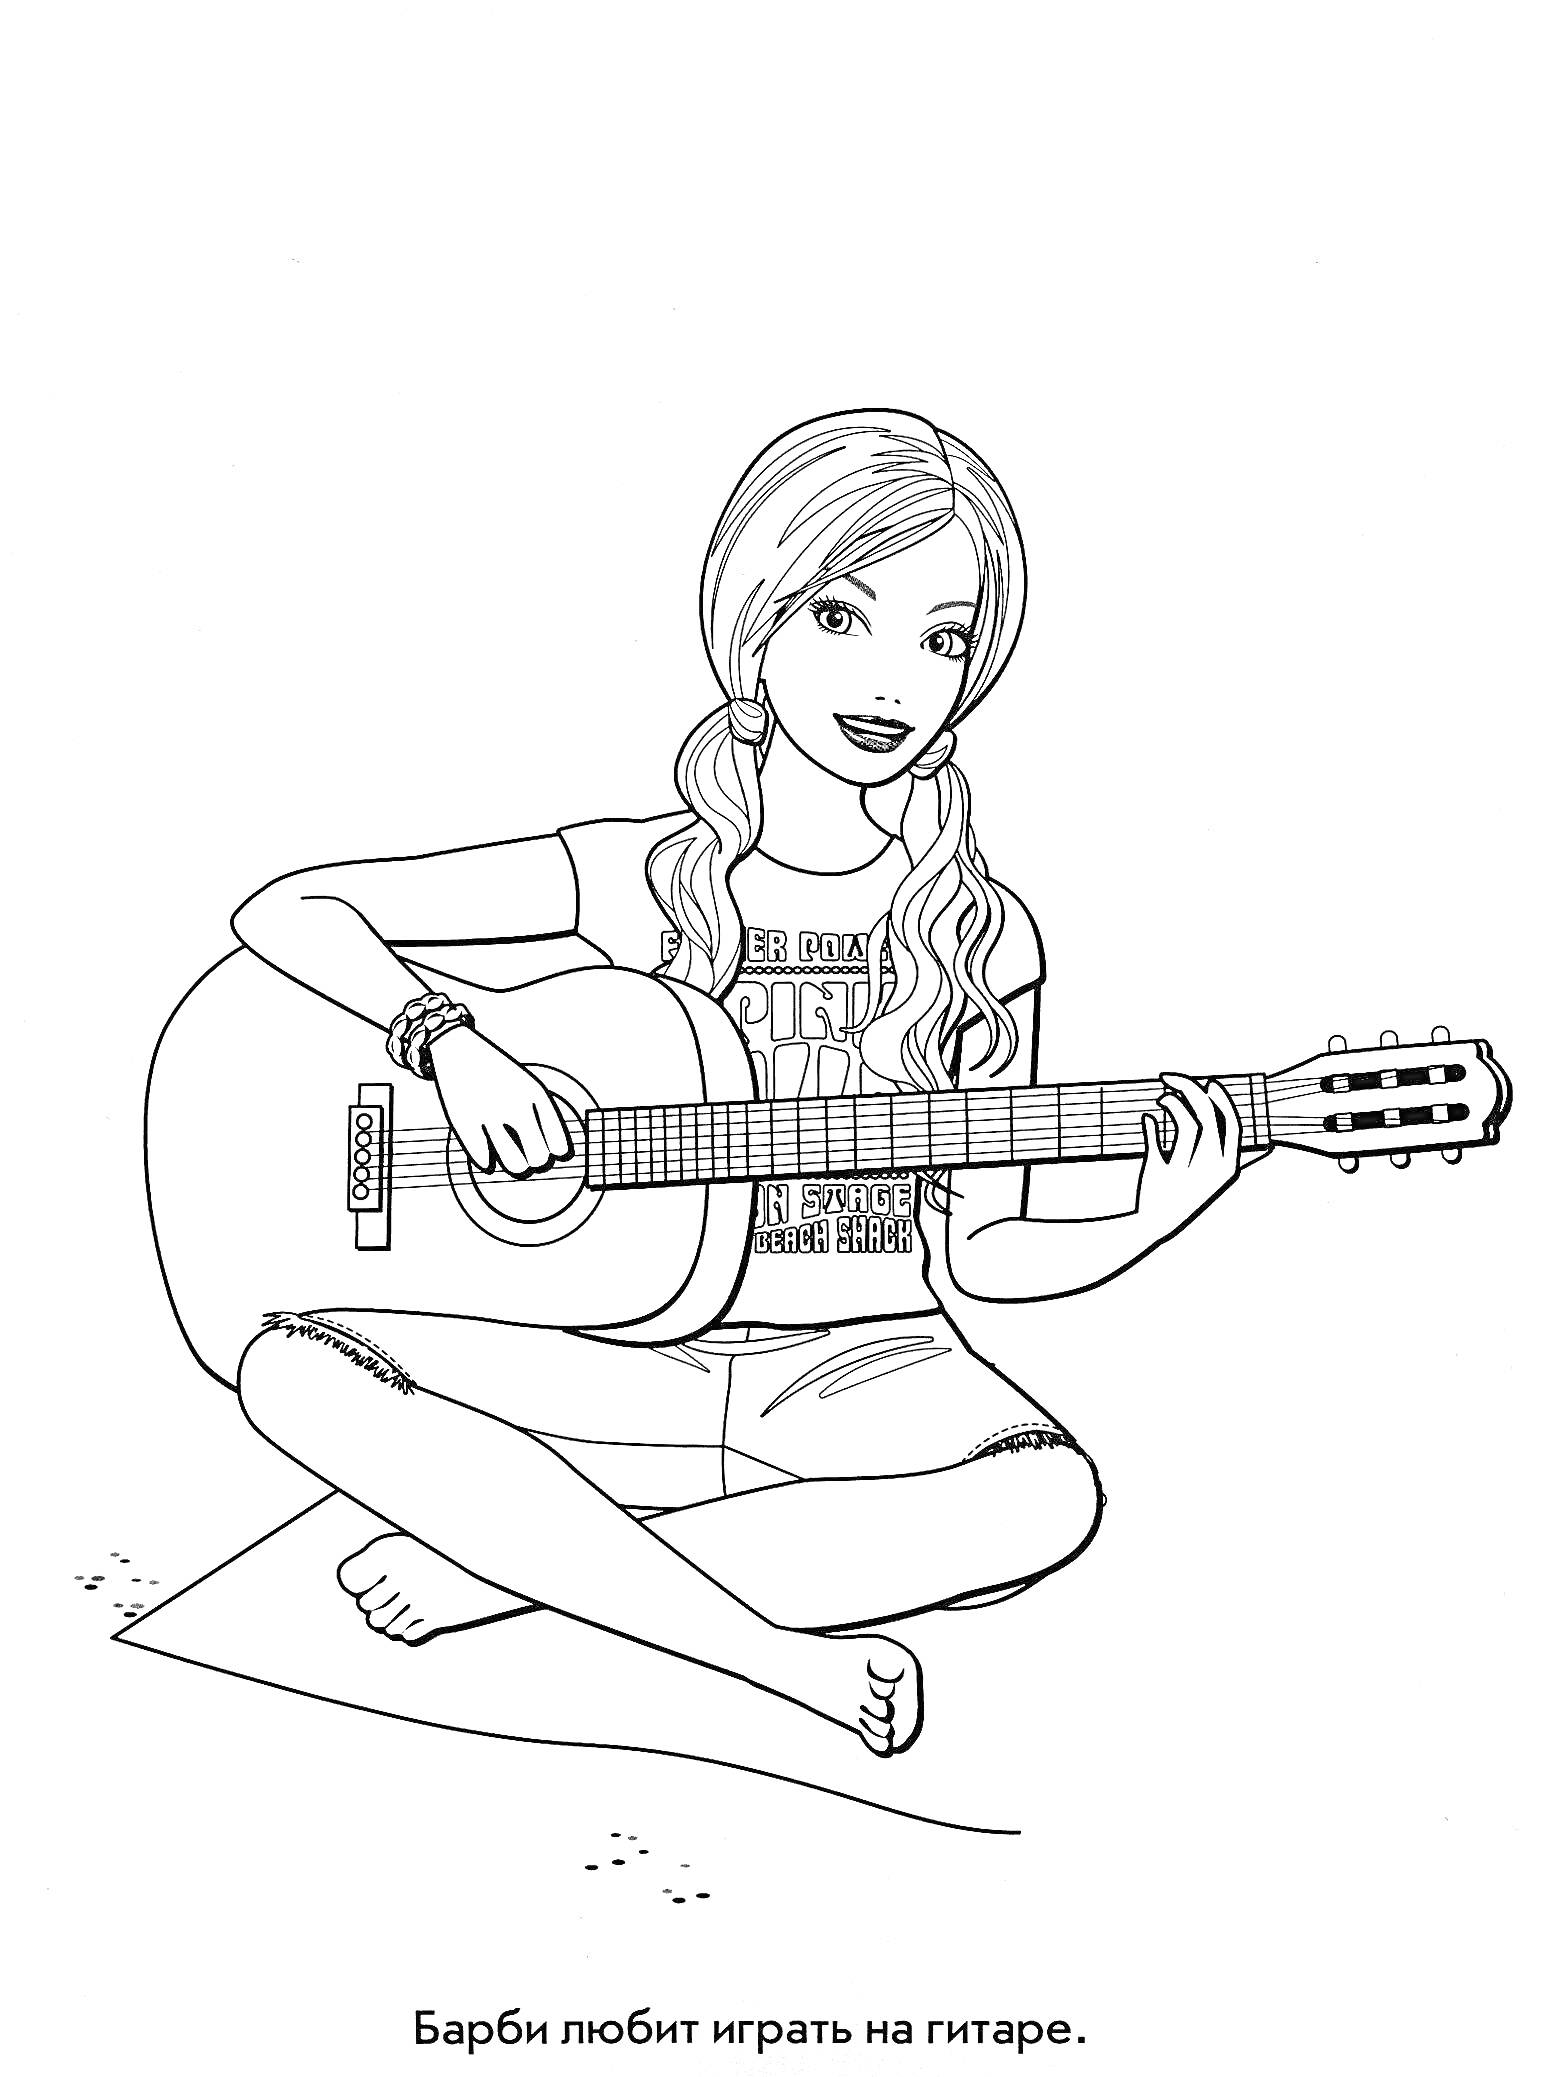 Девочка с гитарой, сидящая на полу в футболке и шортах